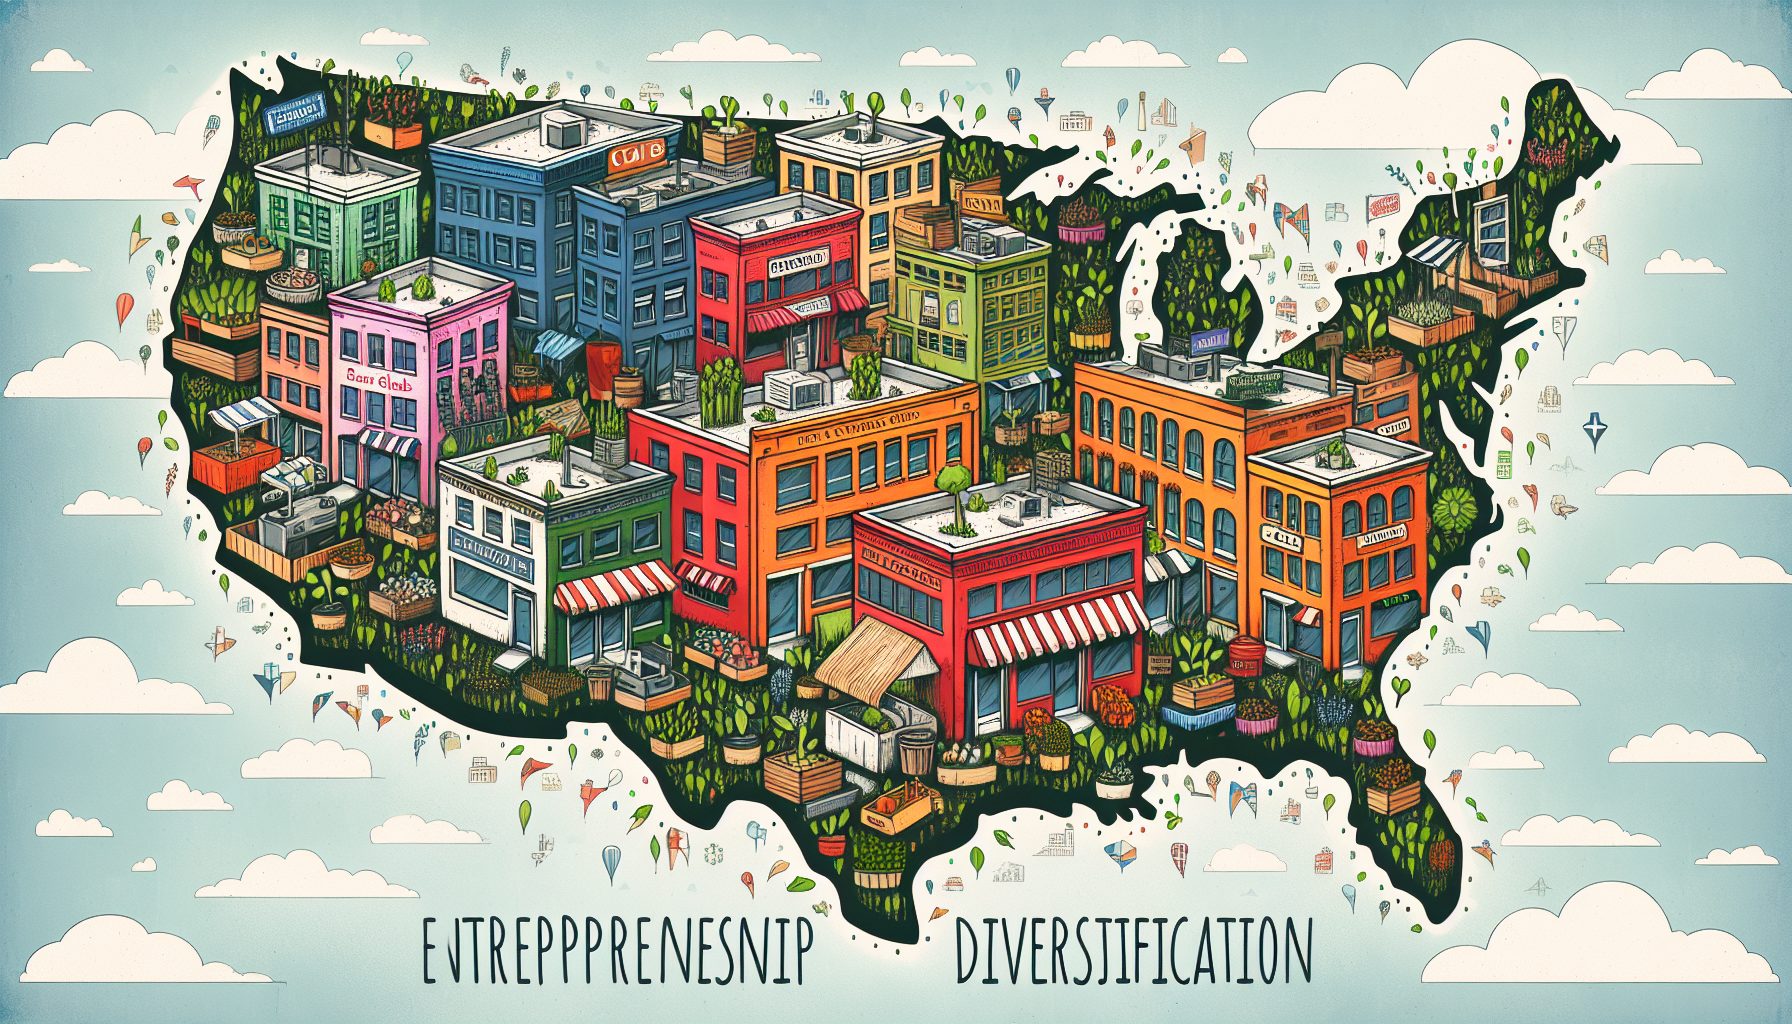 Entrepreneurship surge diversifies American business landscape